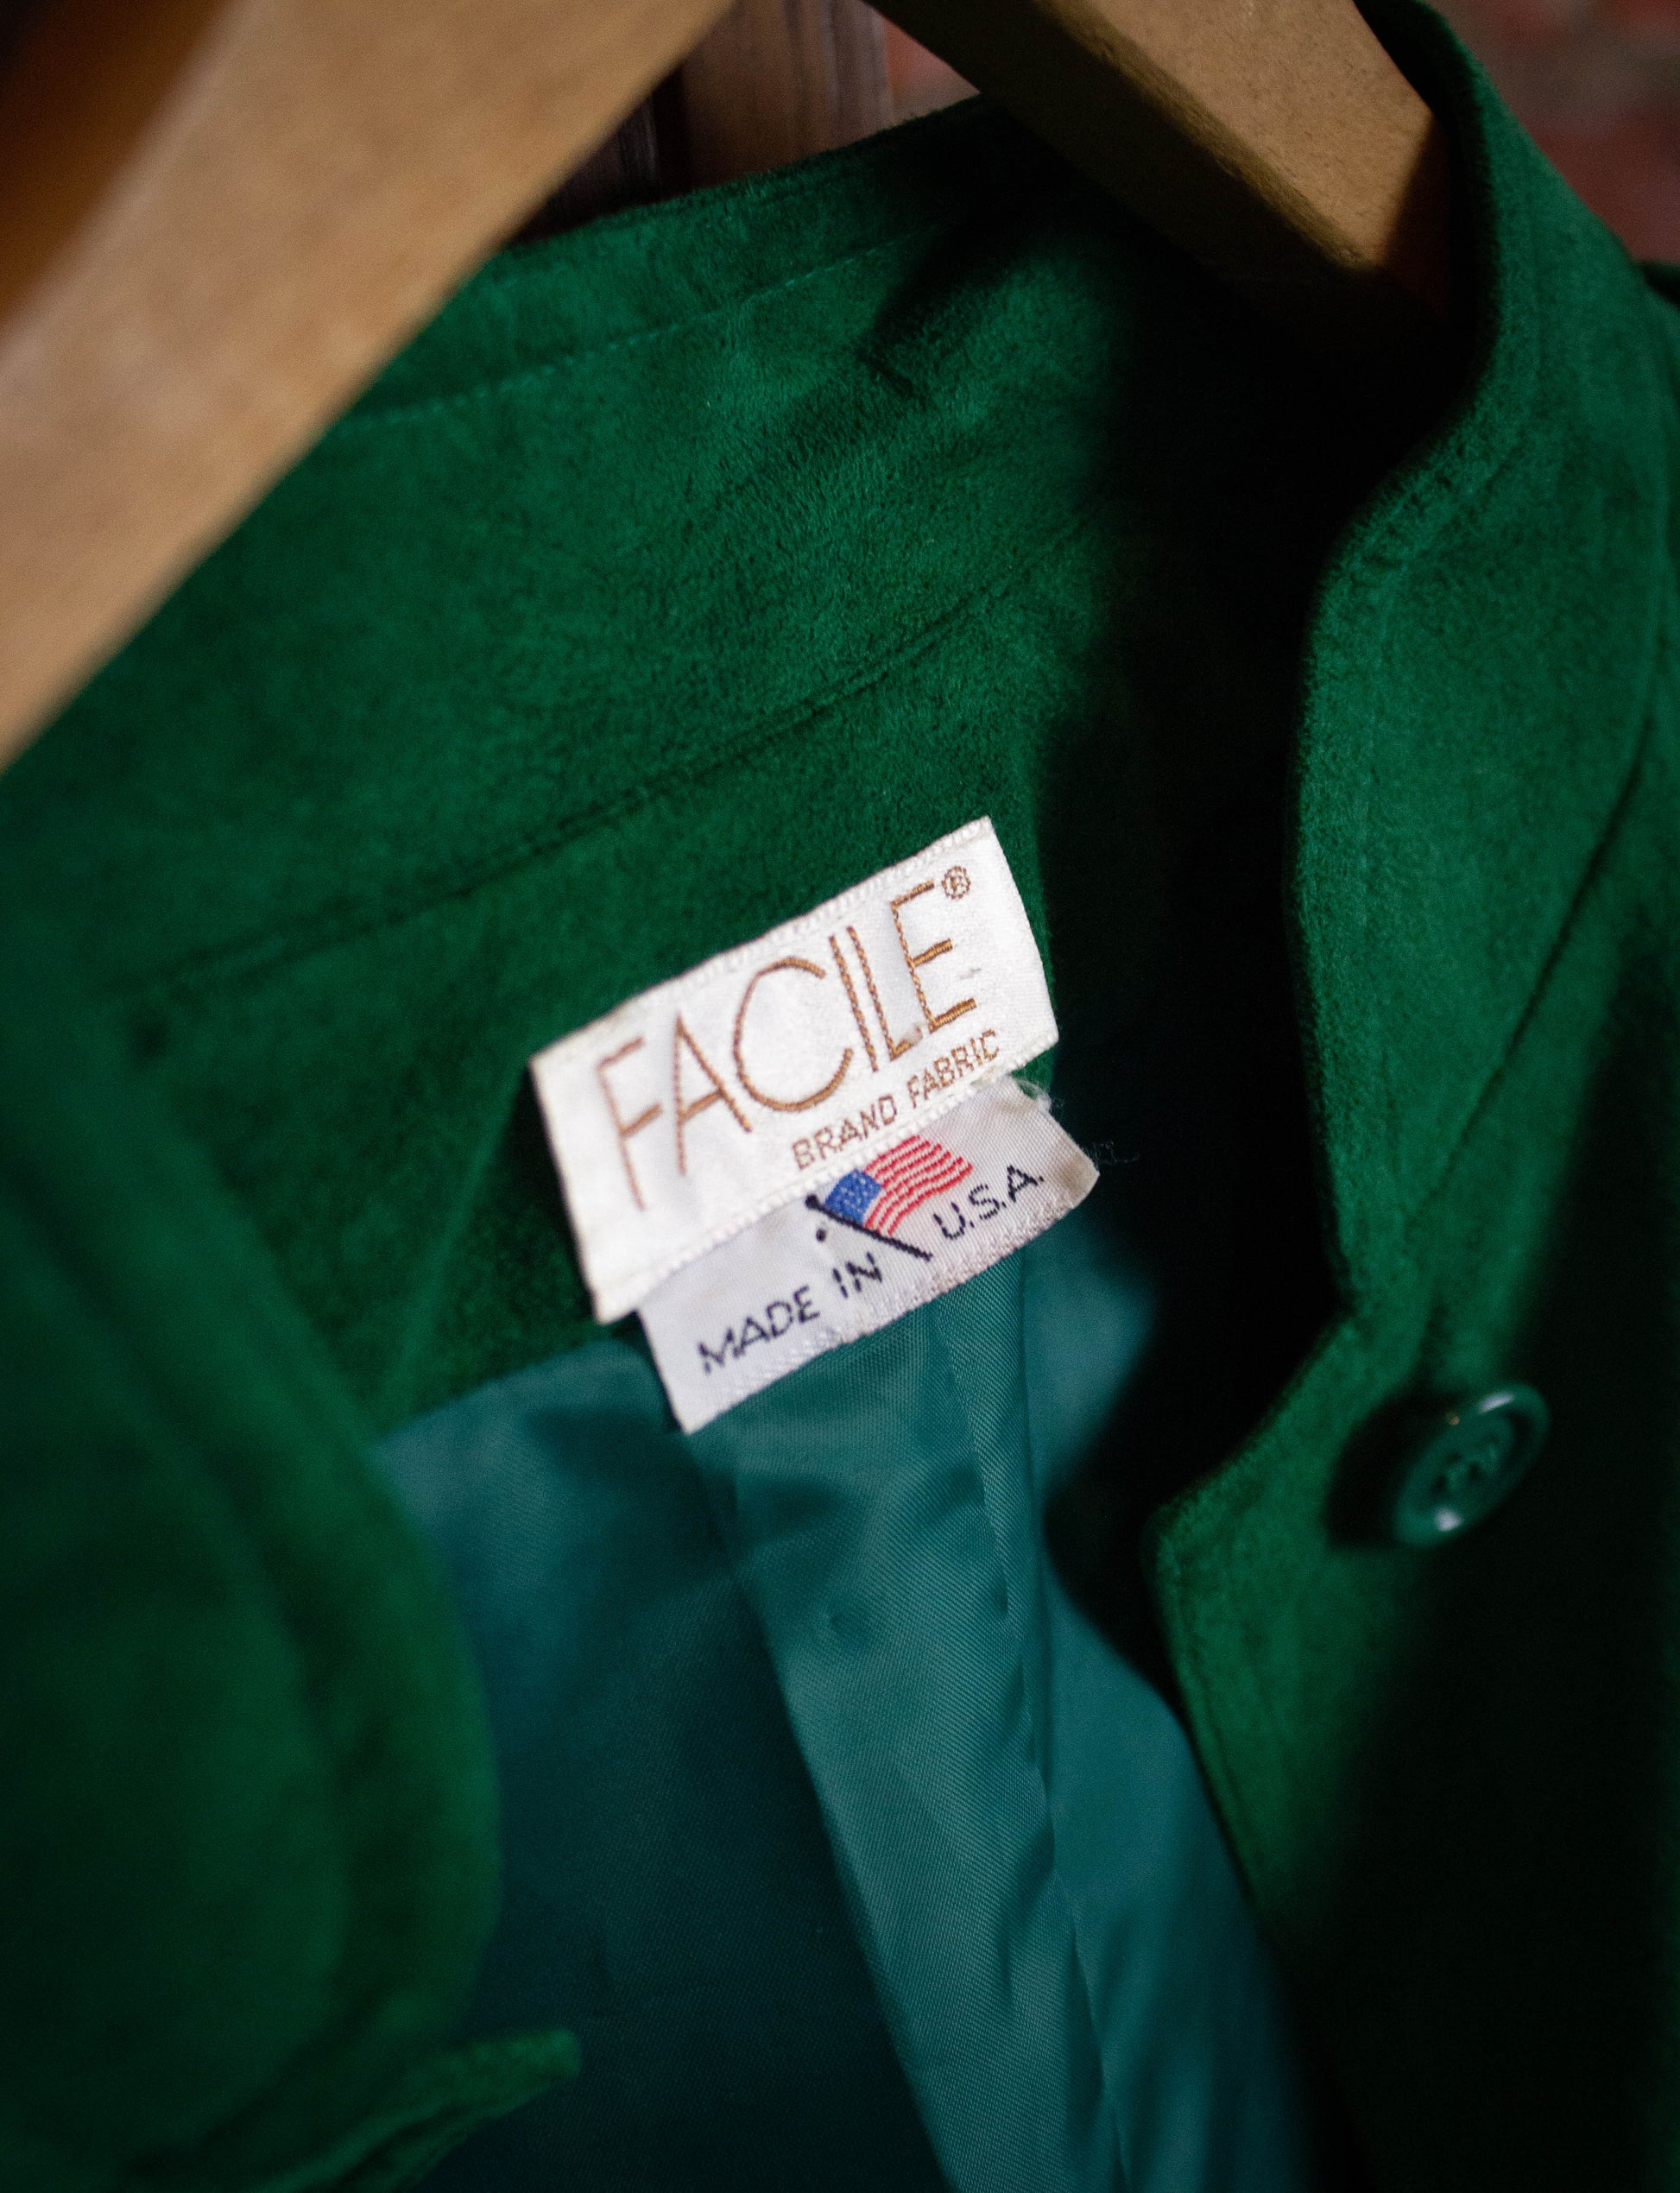 Vintage 80s Facile Green Suede Jacket XL